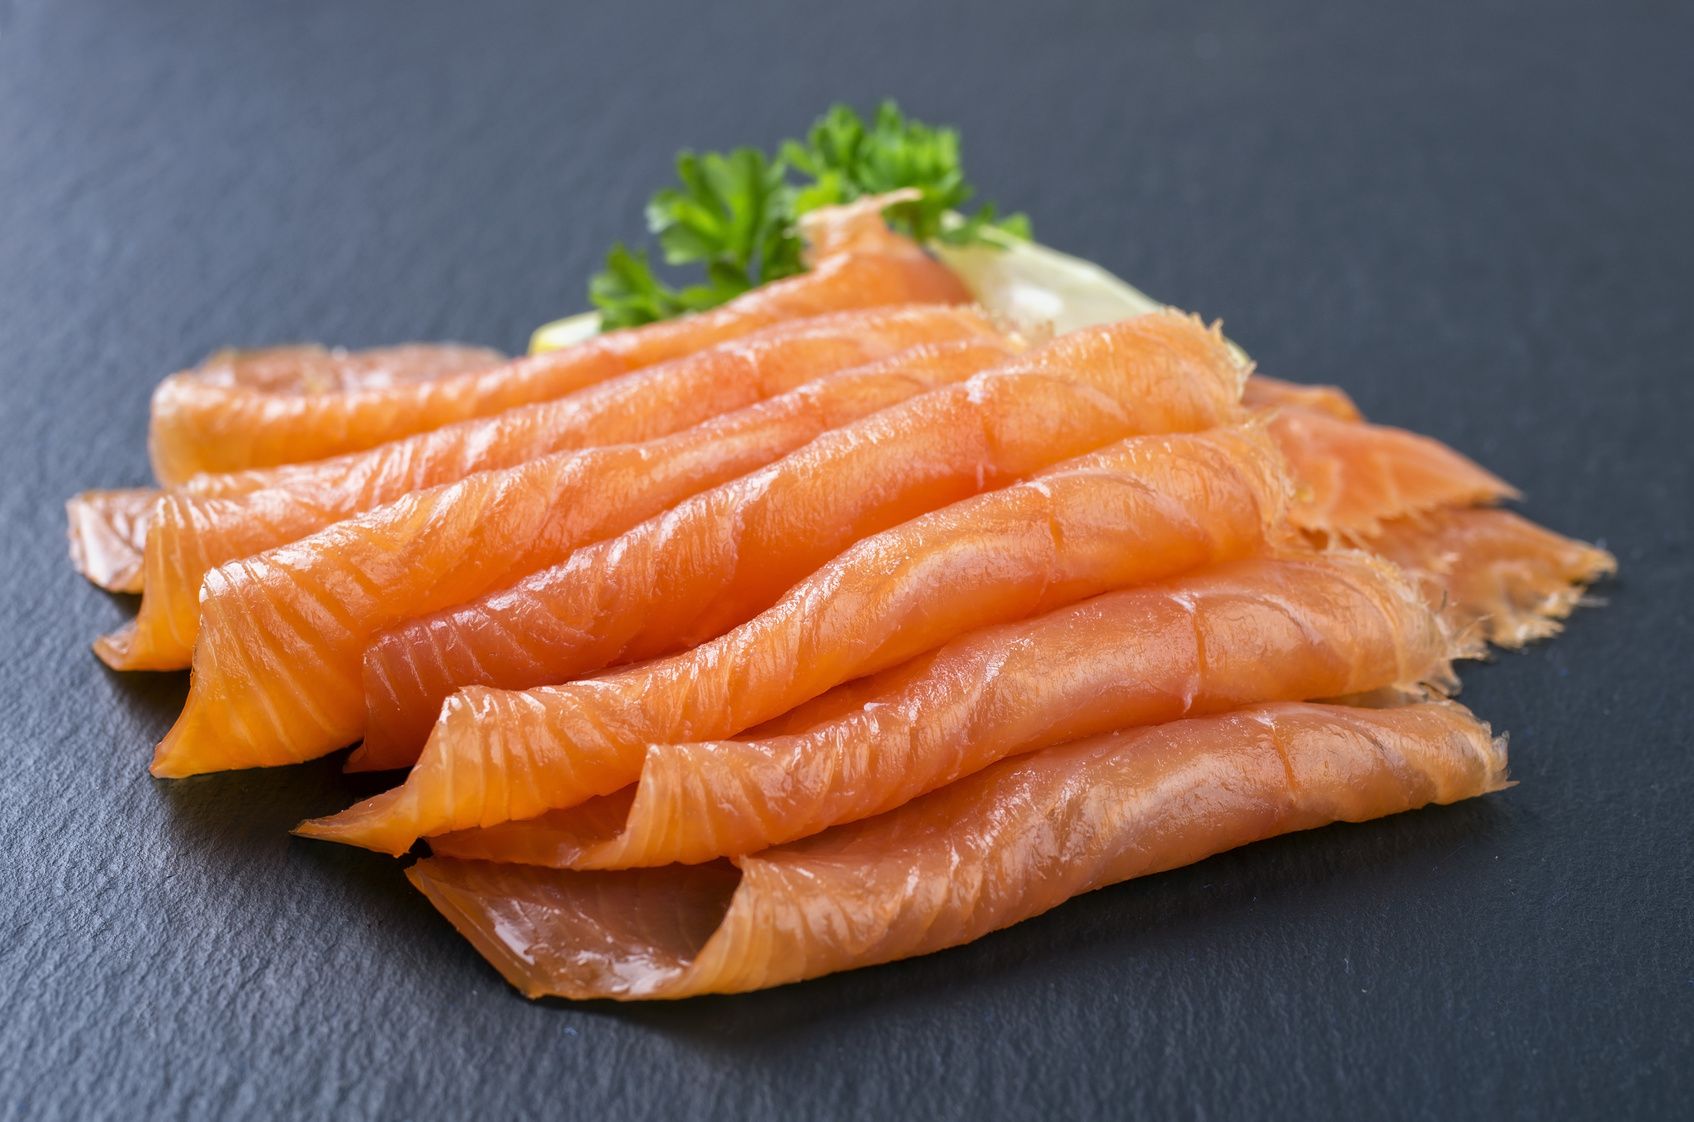 Salmone affumicato test altroconsumo promuove a pieni for Salmone ricette